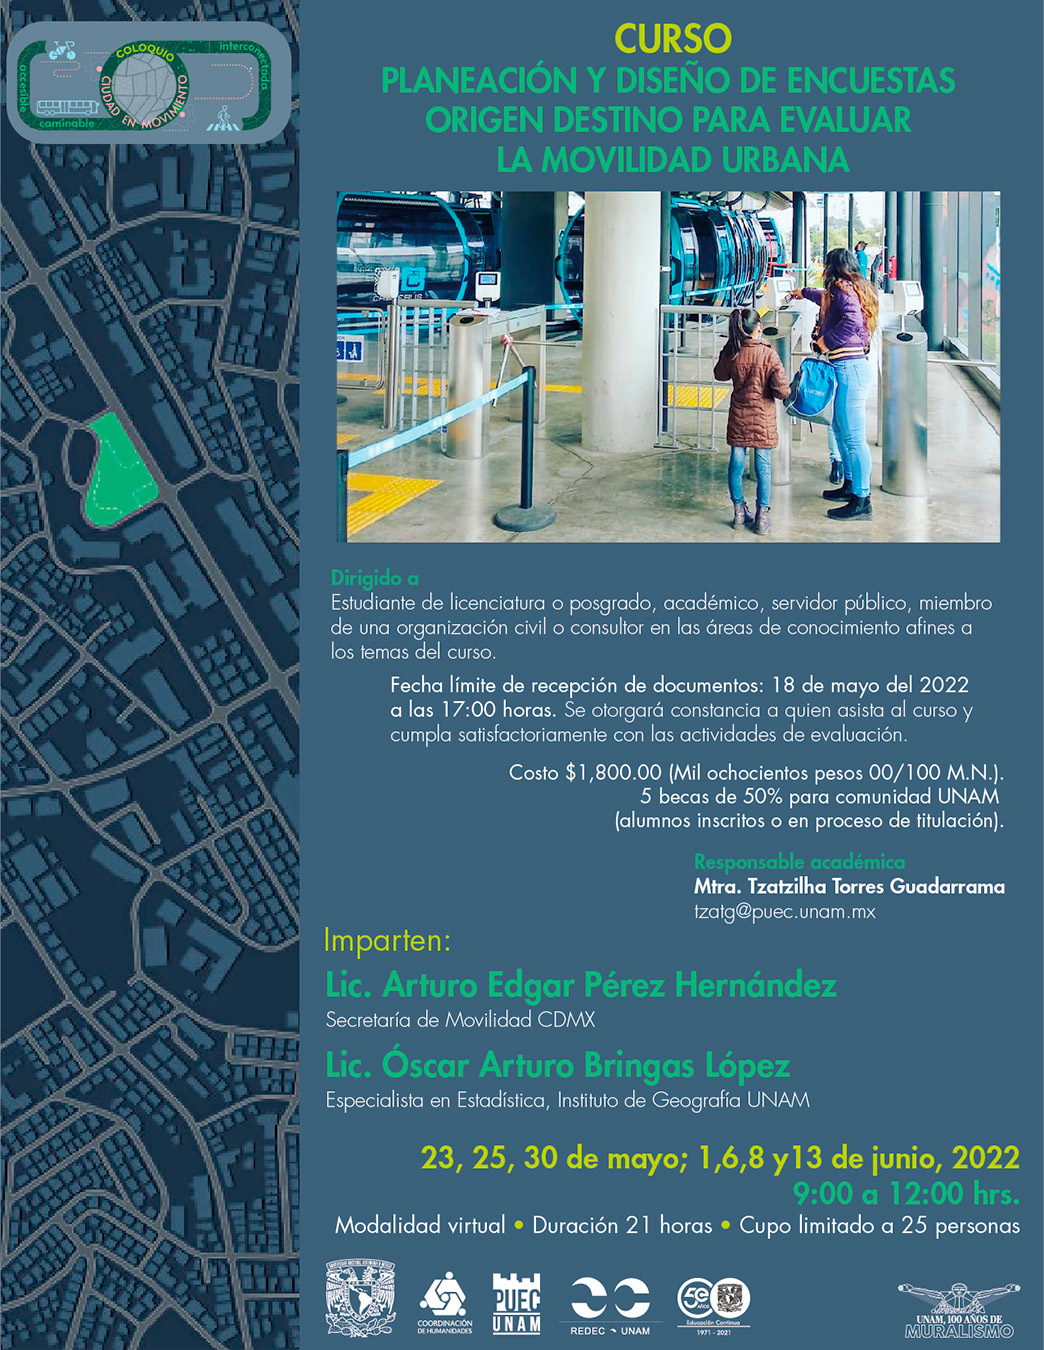 Curso Planeación y diseño de encuestas origen destino para evaluar la movilidad urbana